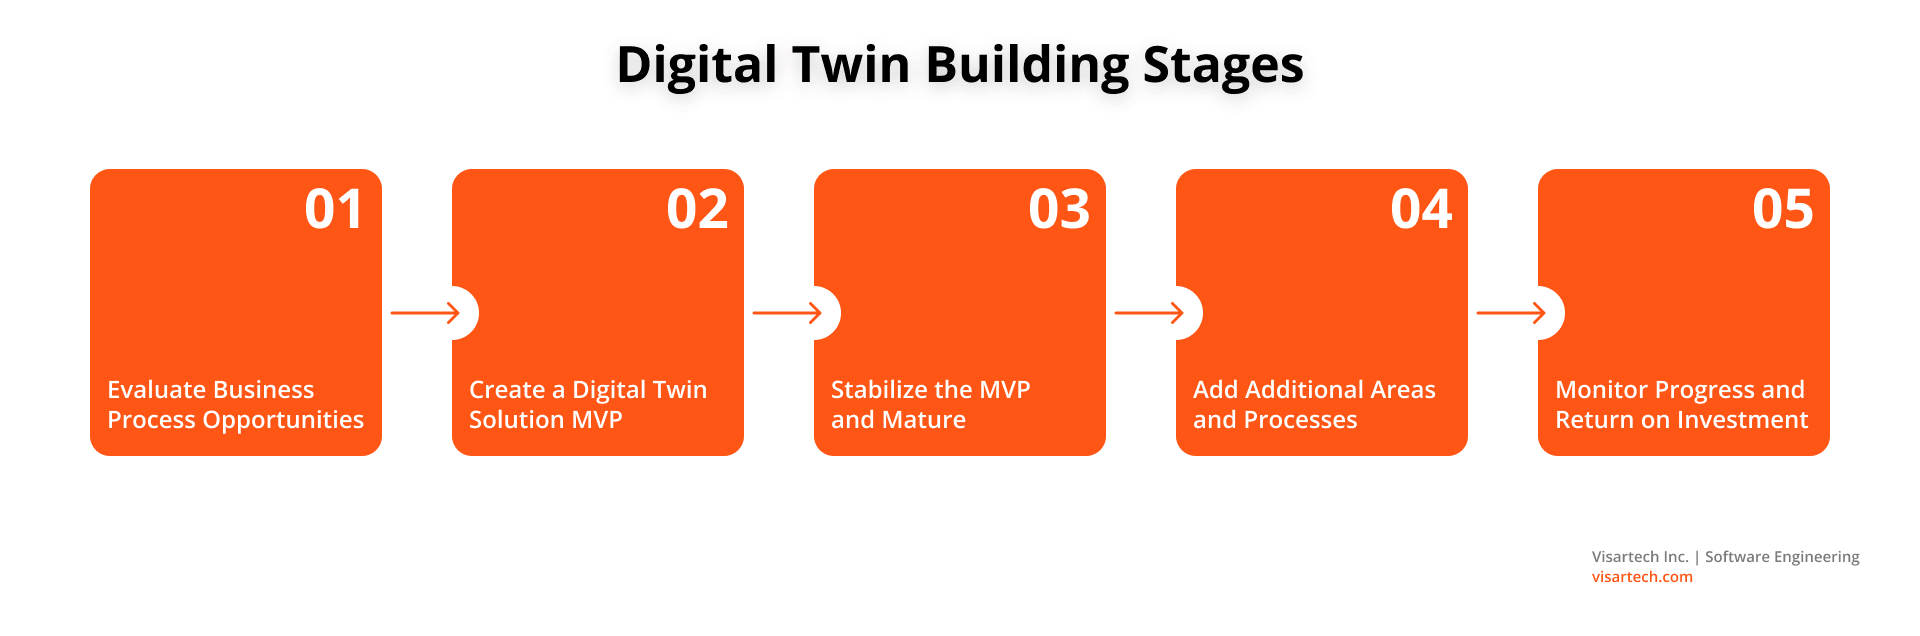 Digital Twin Building Stages - Visartech Blog